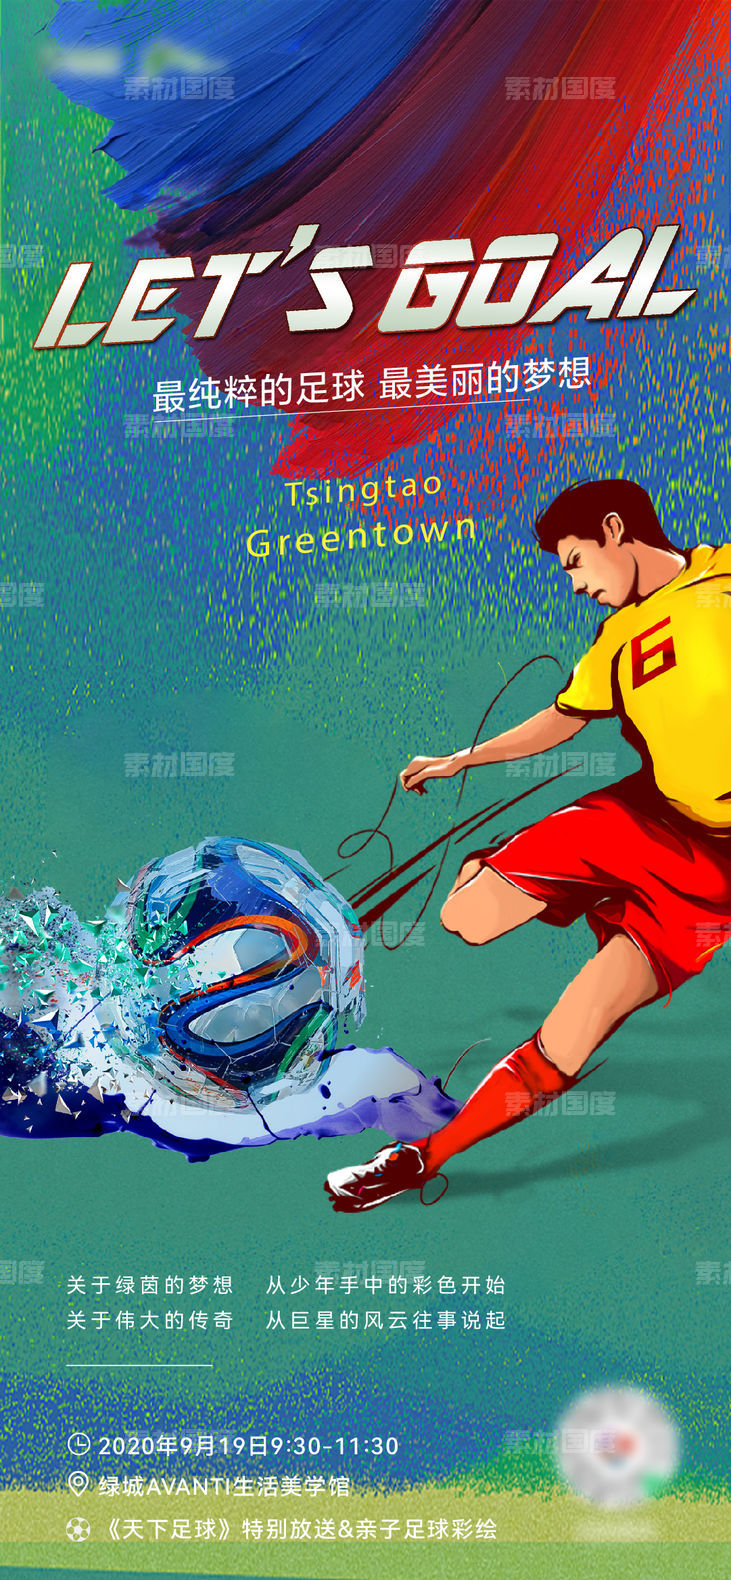 足球赛 世界杯 足球少年 足球 联赛 活动海报